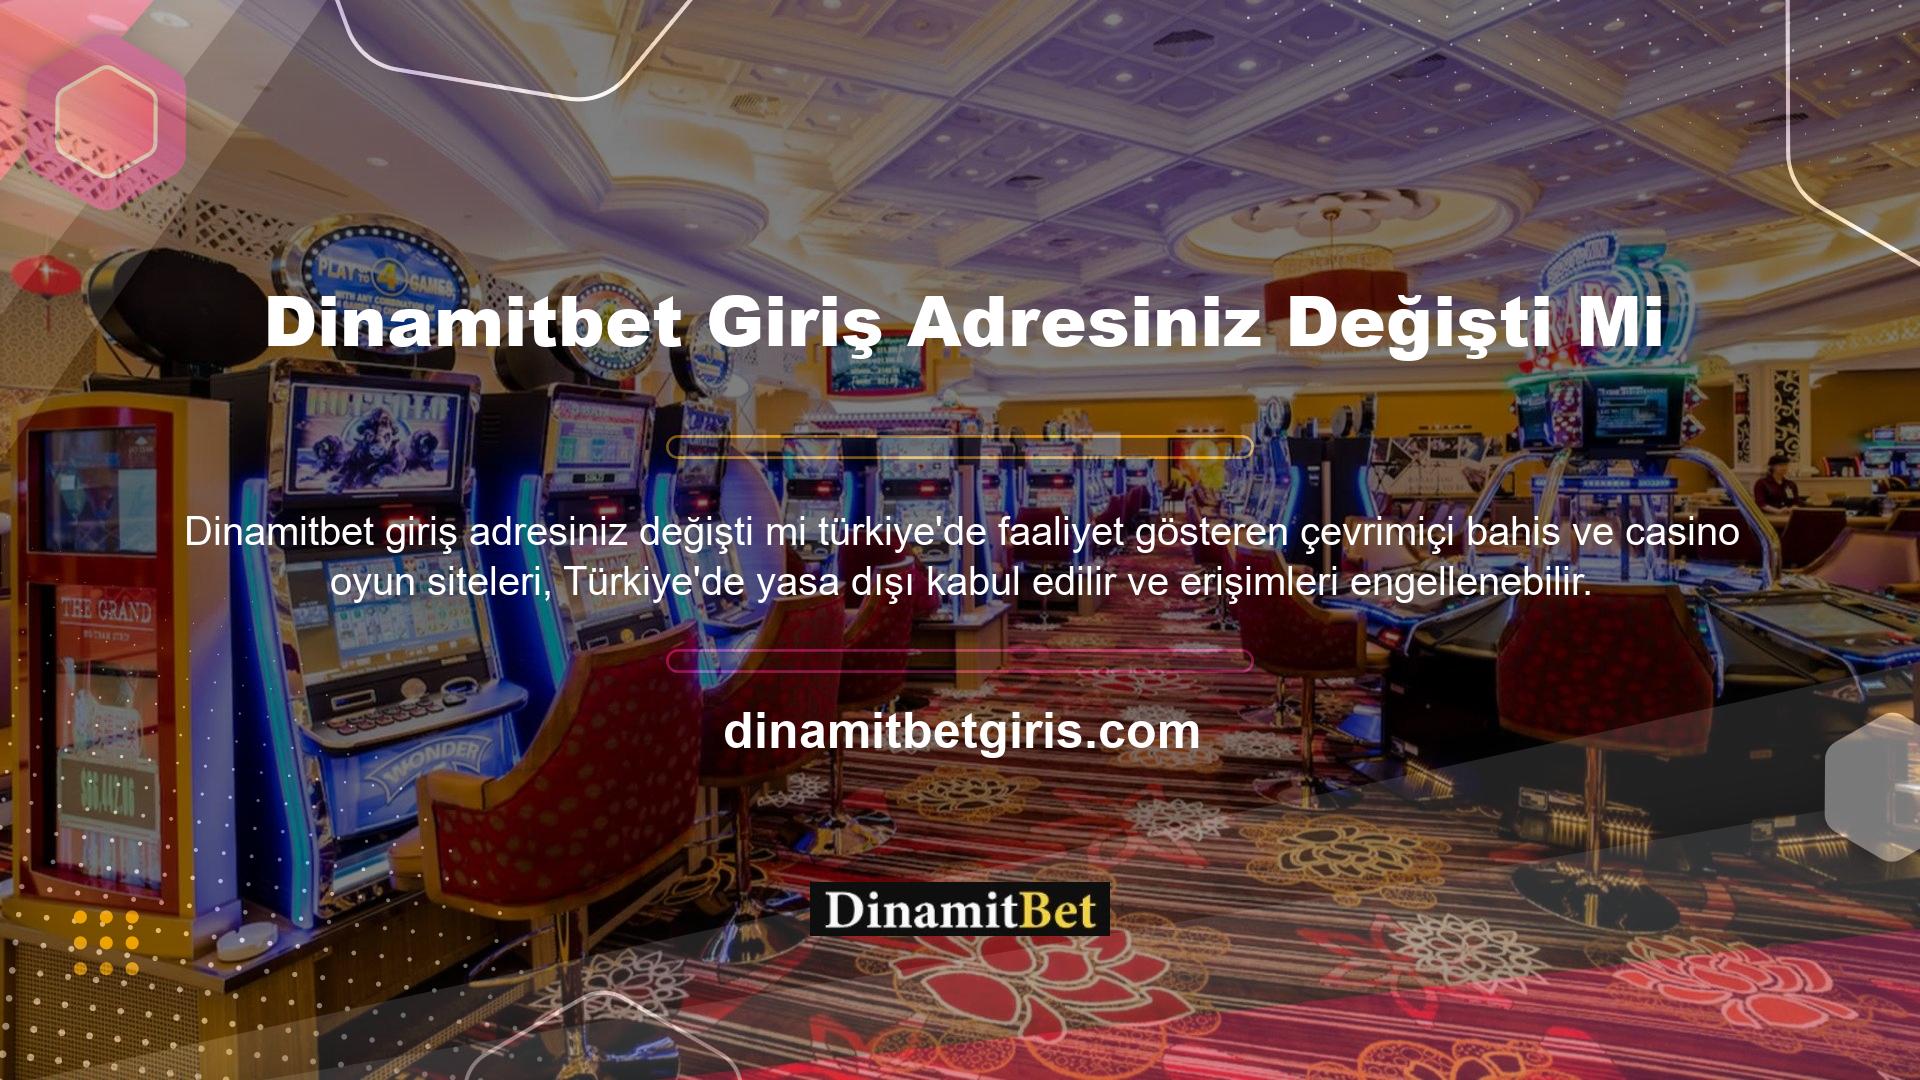 Dinamitbet Games ve Casino online oyun platformunun son bağlantısı Dinamitbet giriş adresi olarak güncellendi